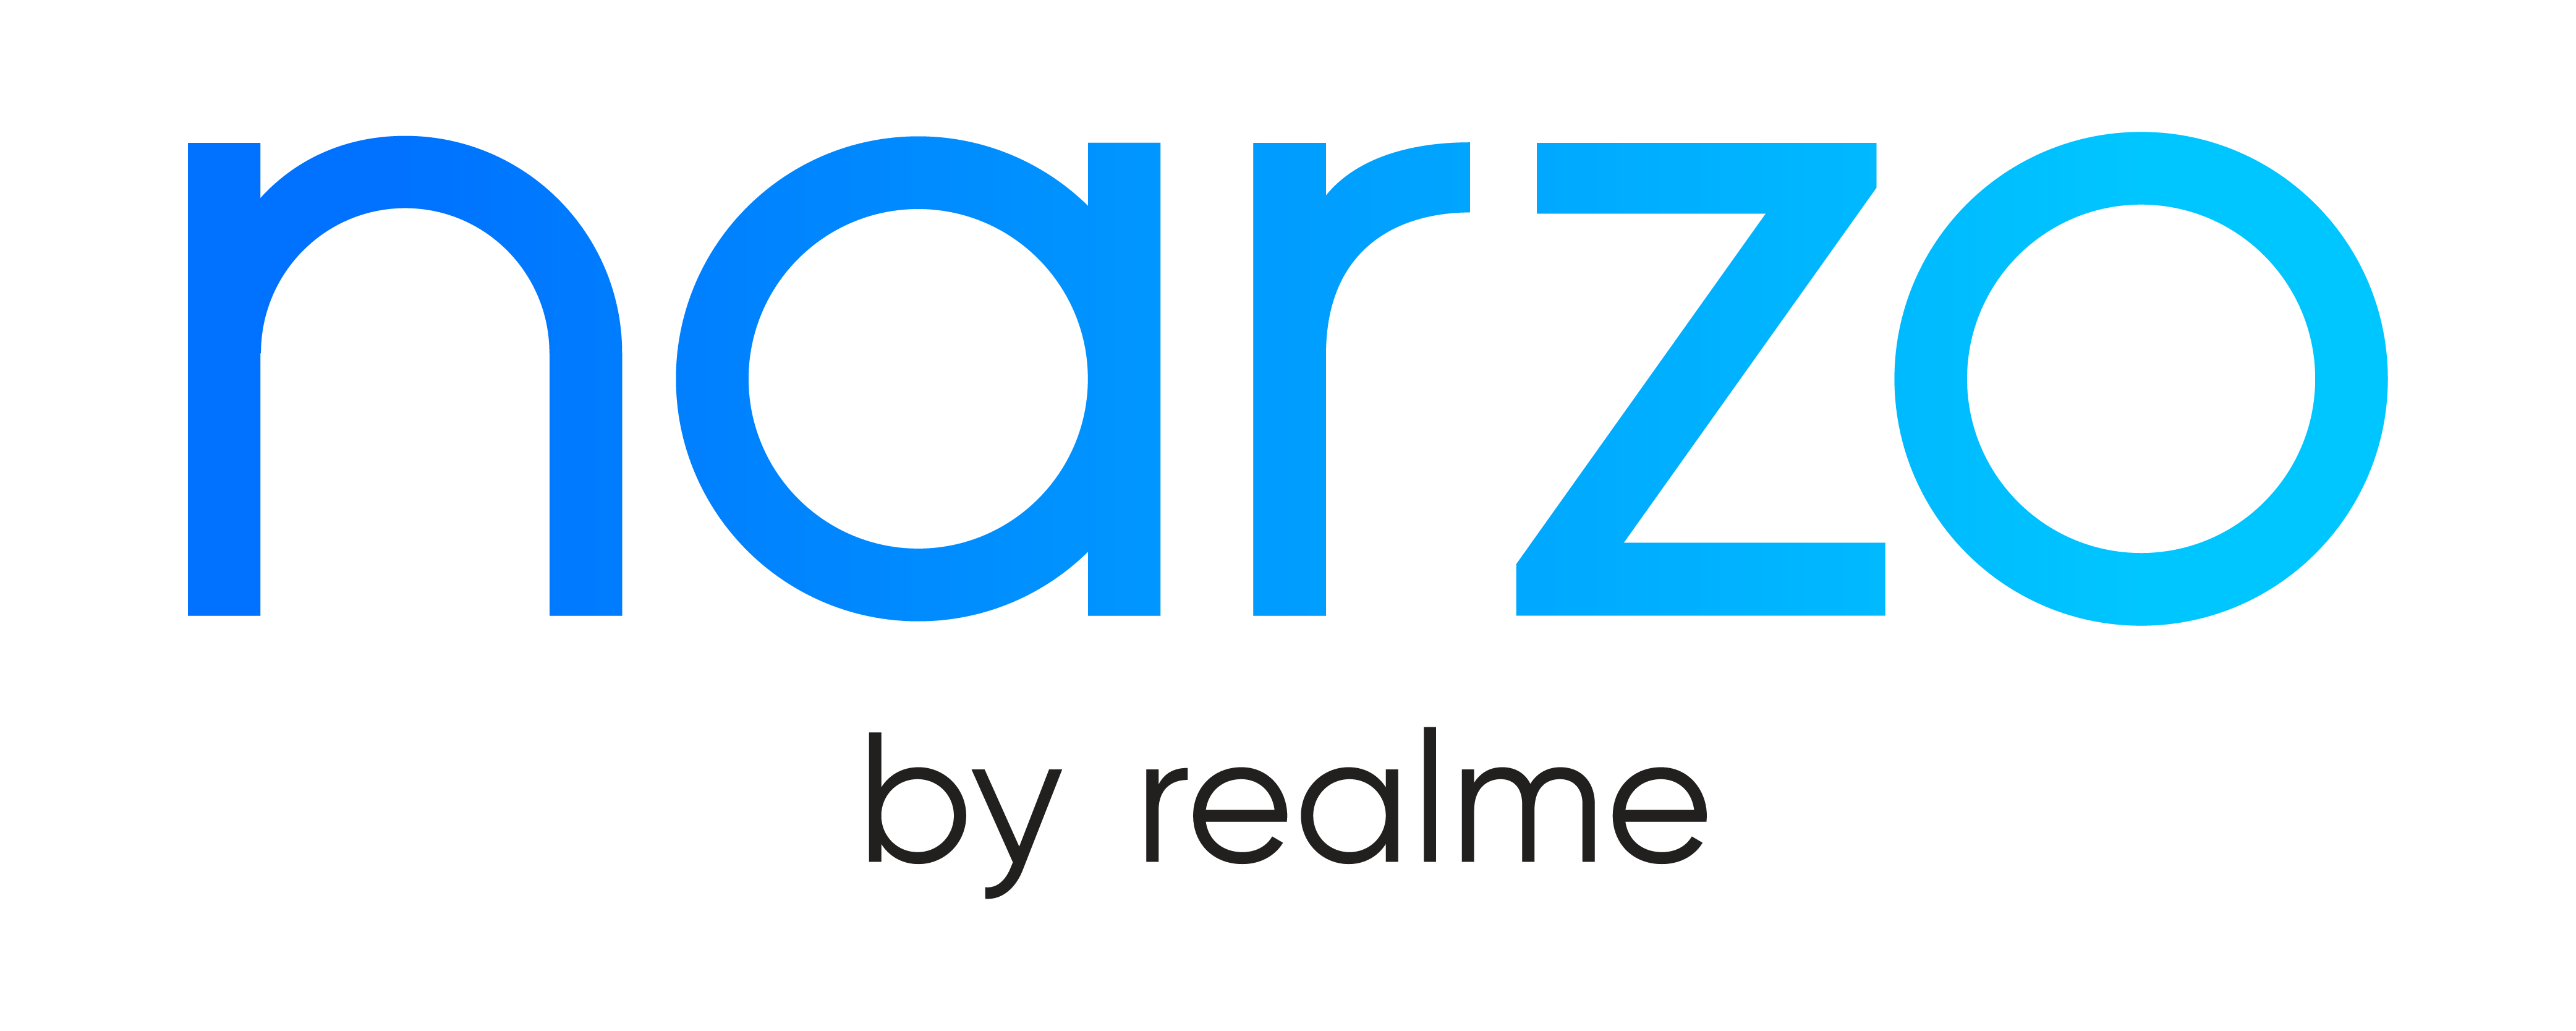 realme 2 logo